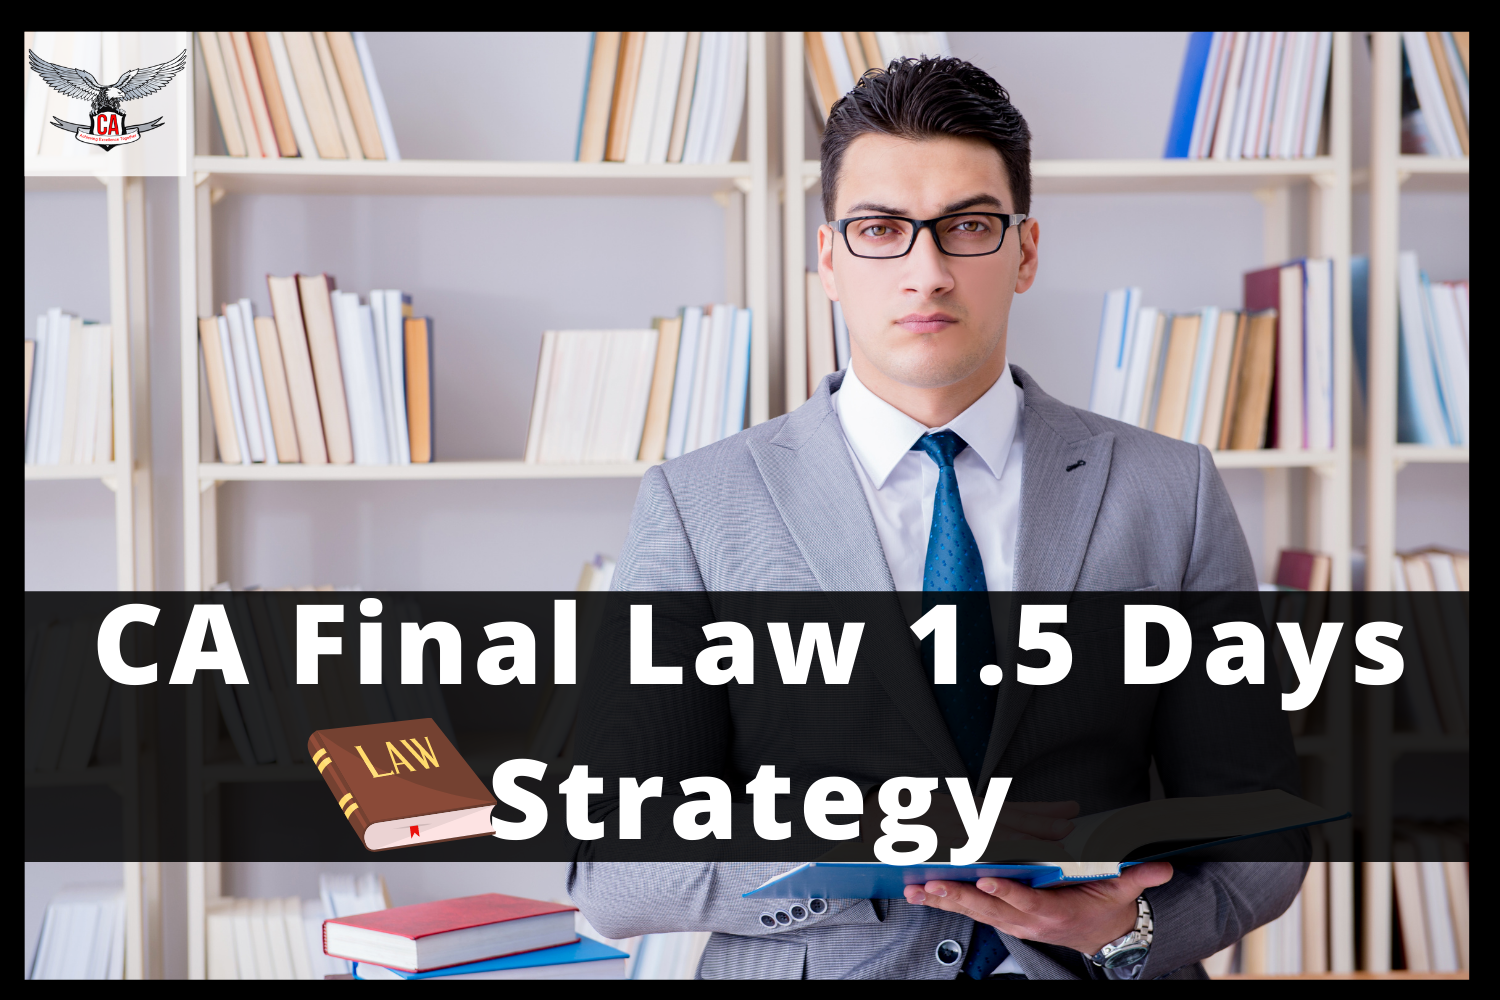 CA Final Law 1.5 Days Strategy